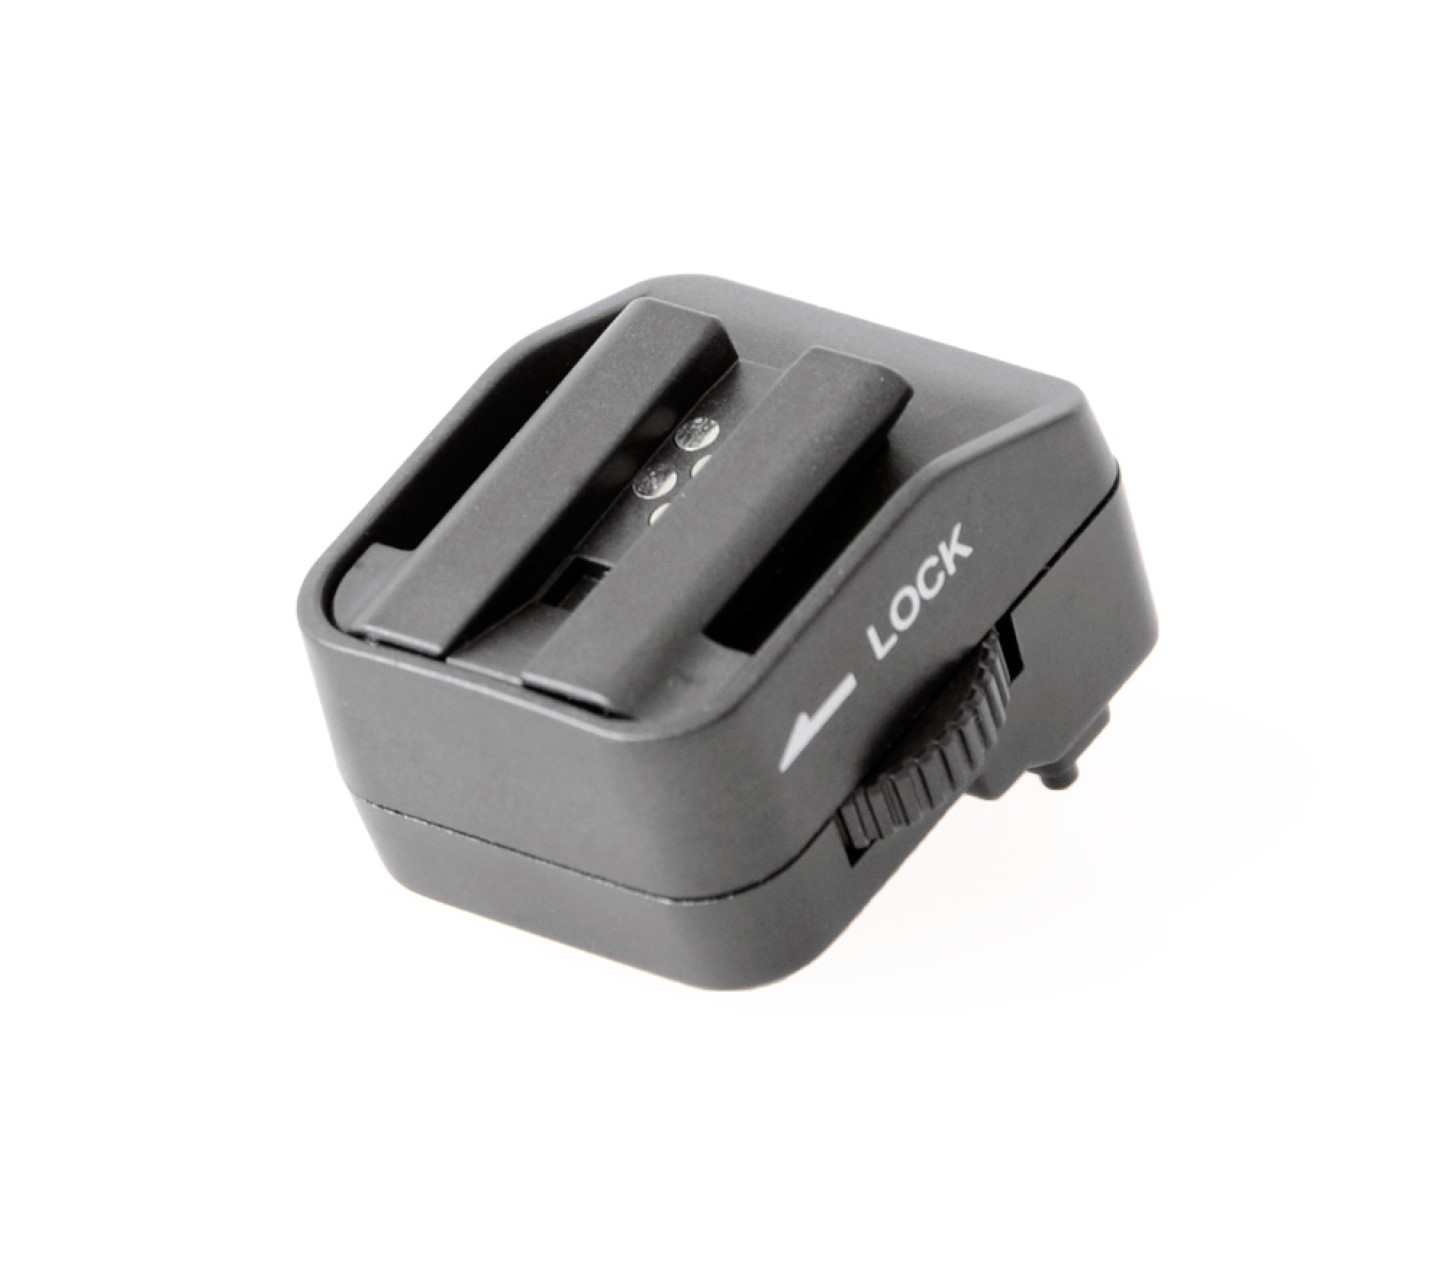 Blitzschuhadapter Hot Shoe Adapter für Sony/Minolta Blitz auf Sony NEX-3 / NEX-5N (MK-SH20)